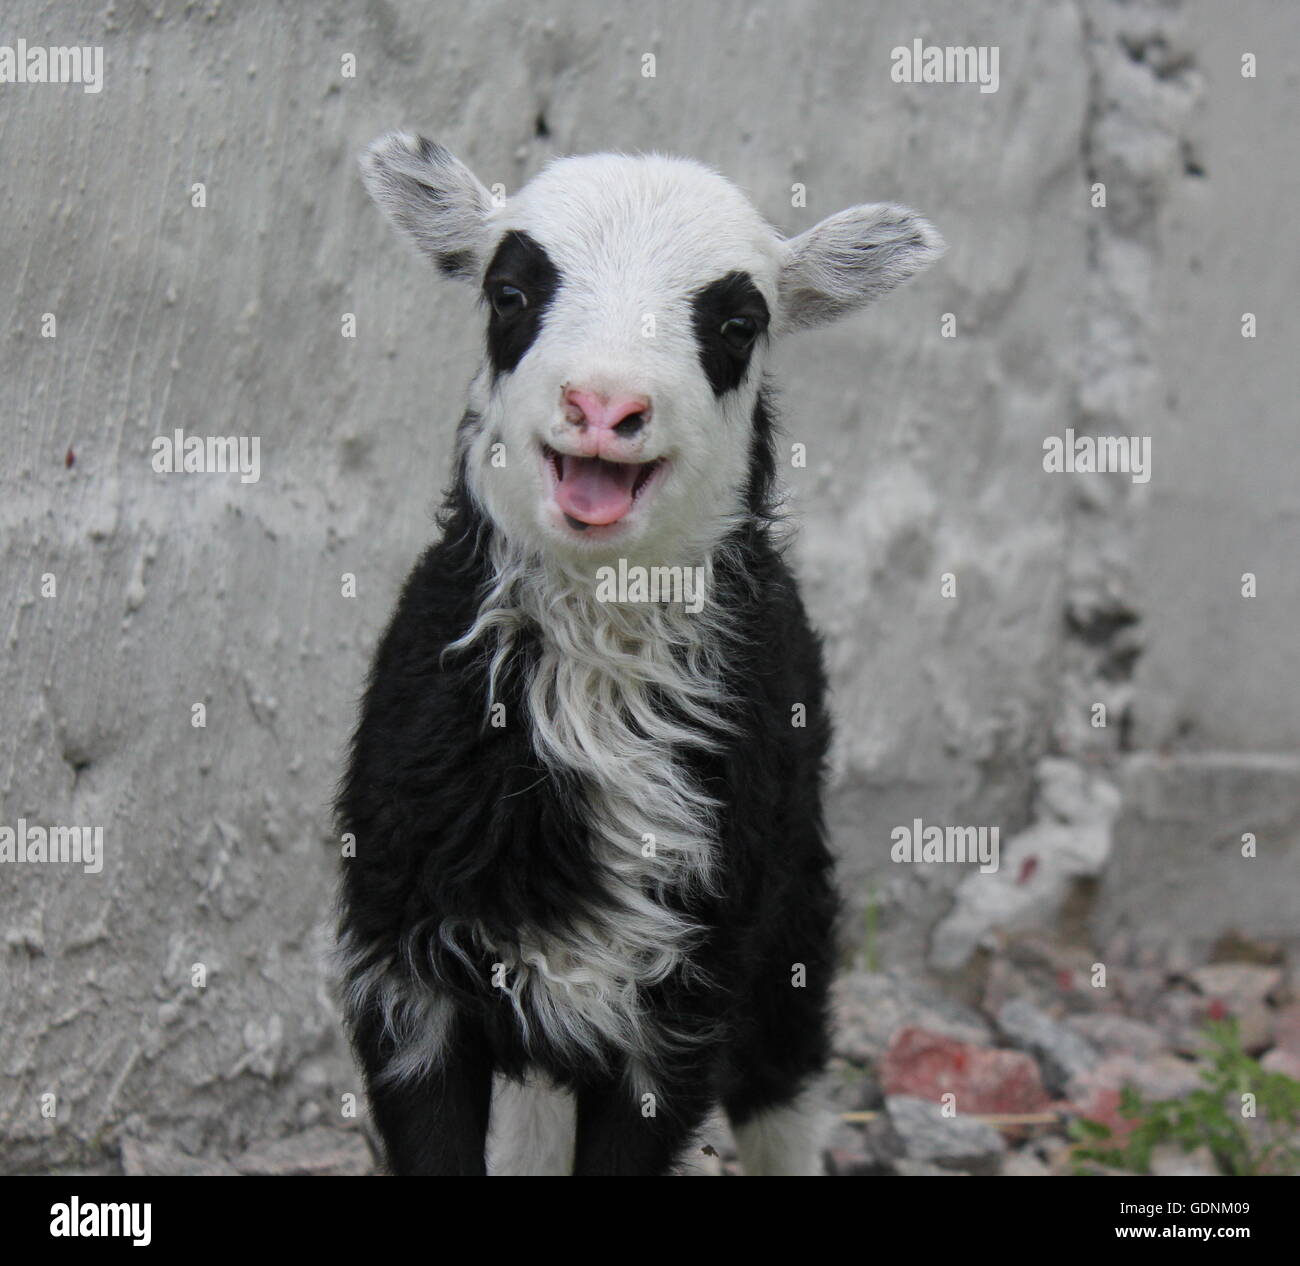 smiling lamb, black, white, pink, wild sheep Stock Photo